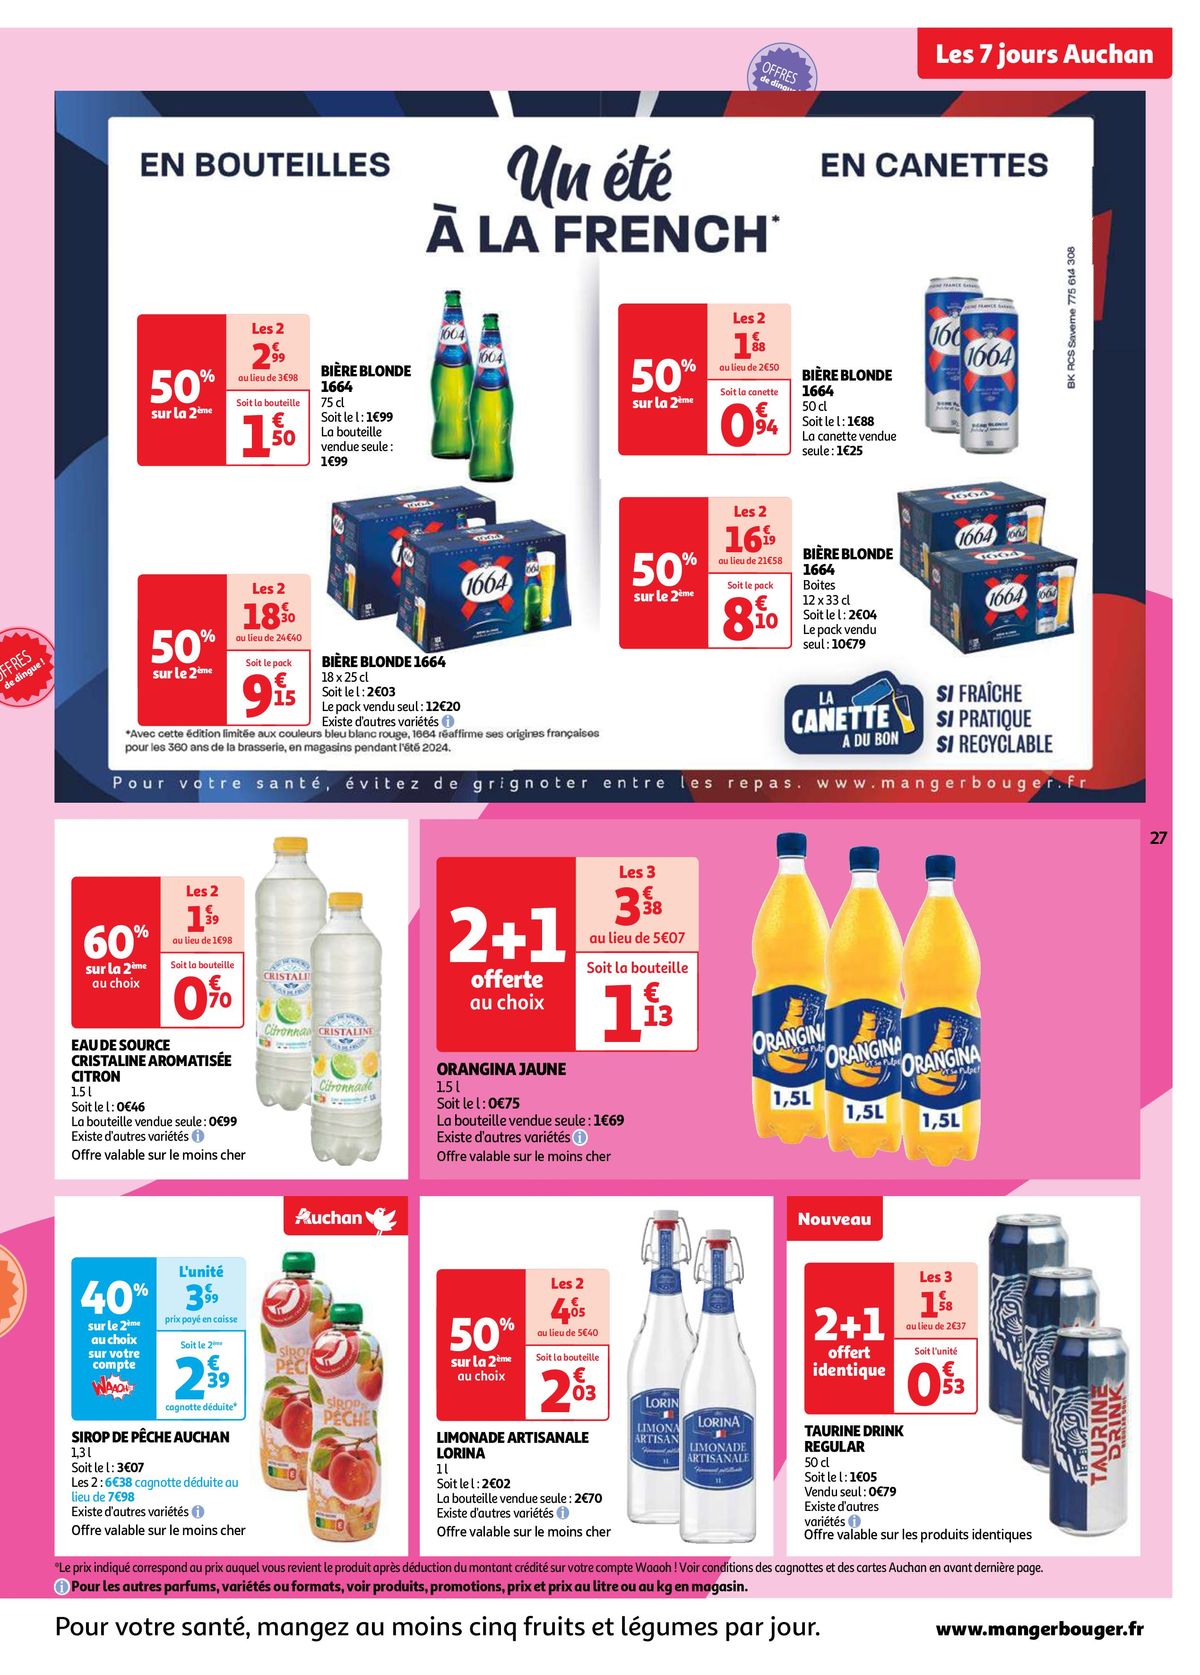 Catalogue Les 7 jours Auchan, c'est maintenant !, page 00027